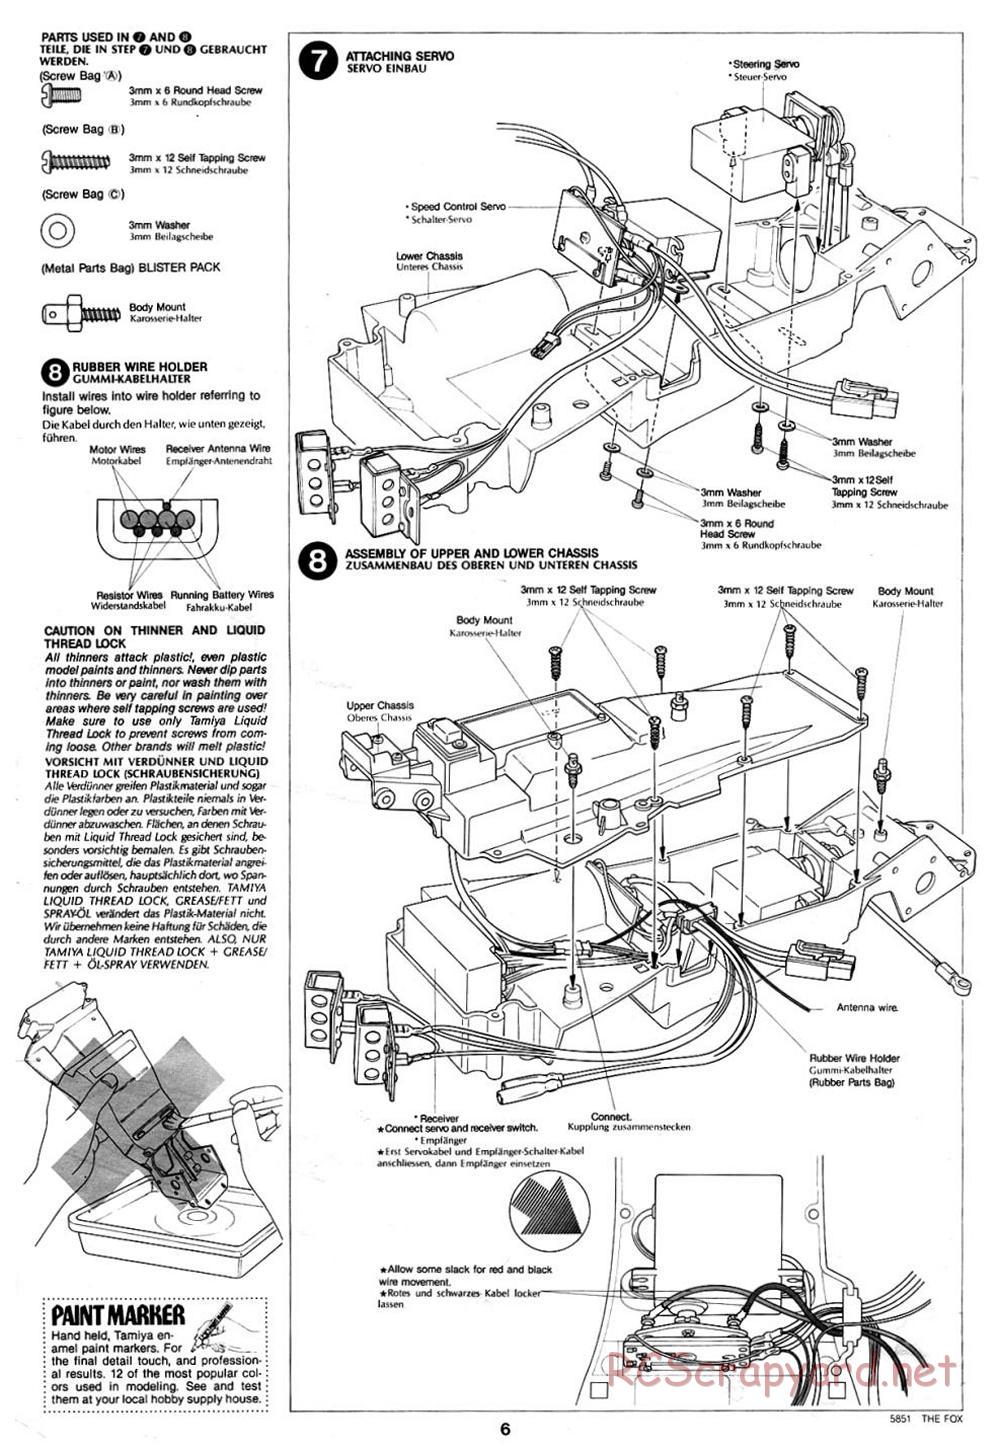 Tamiya - The Fox - 58051 - Manual - Page 6